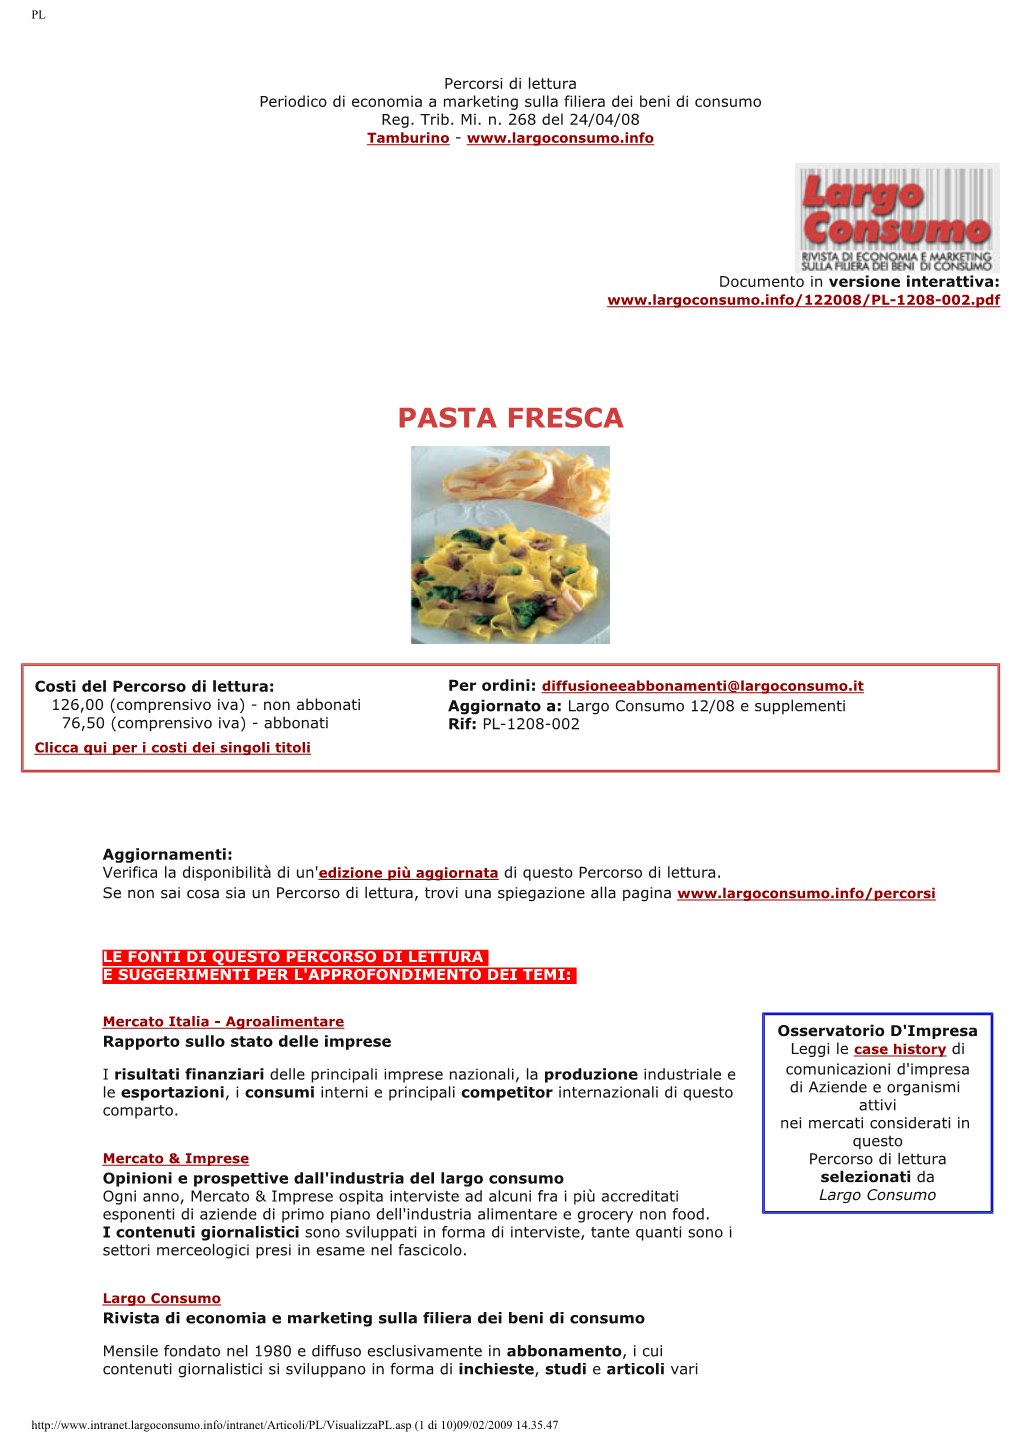 Il Mercato Italia Della Pasta Fresca: Produzione, Distribuzione, Consumo